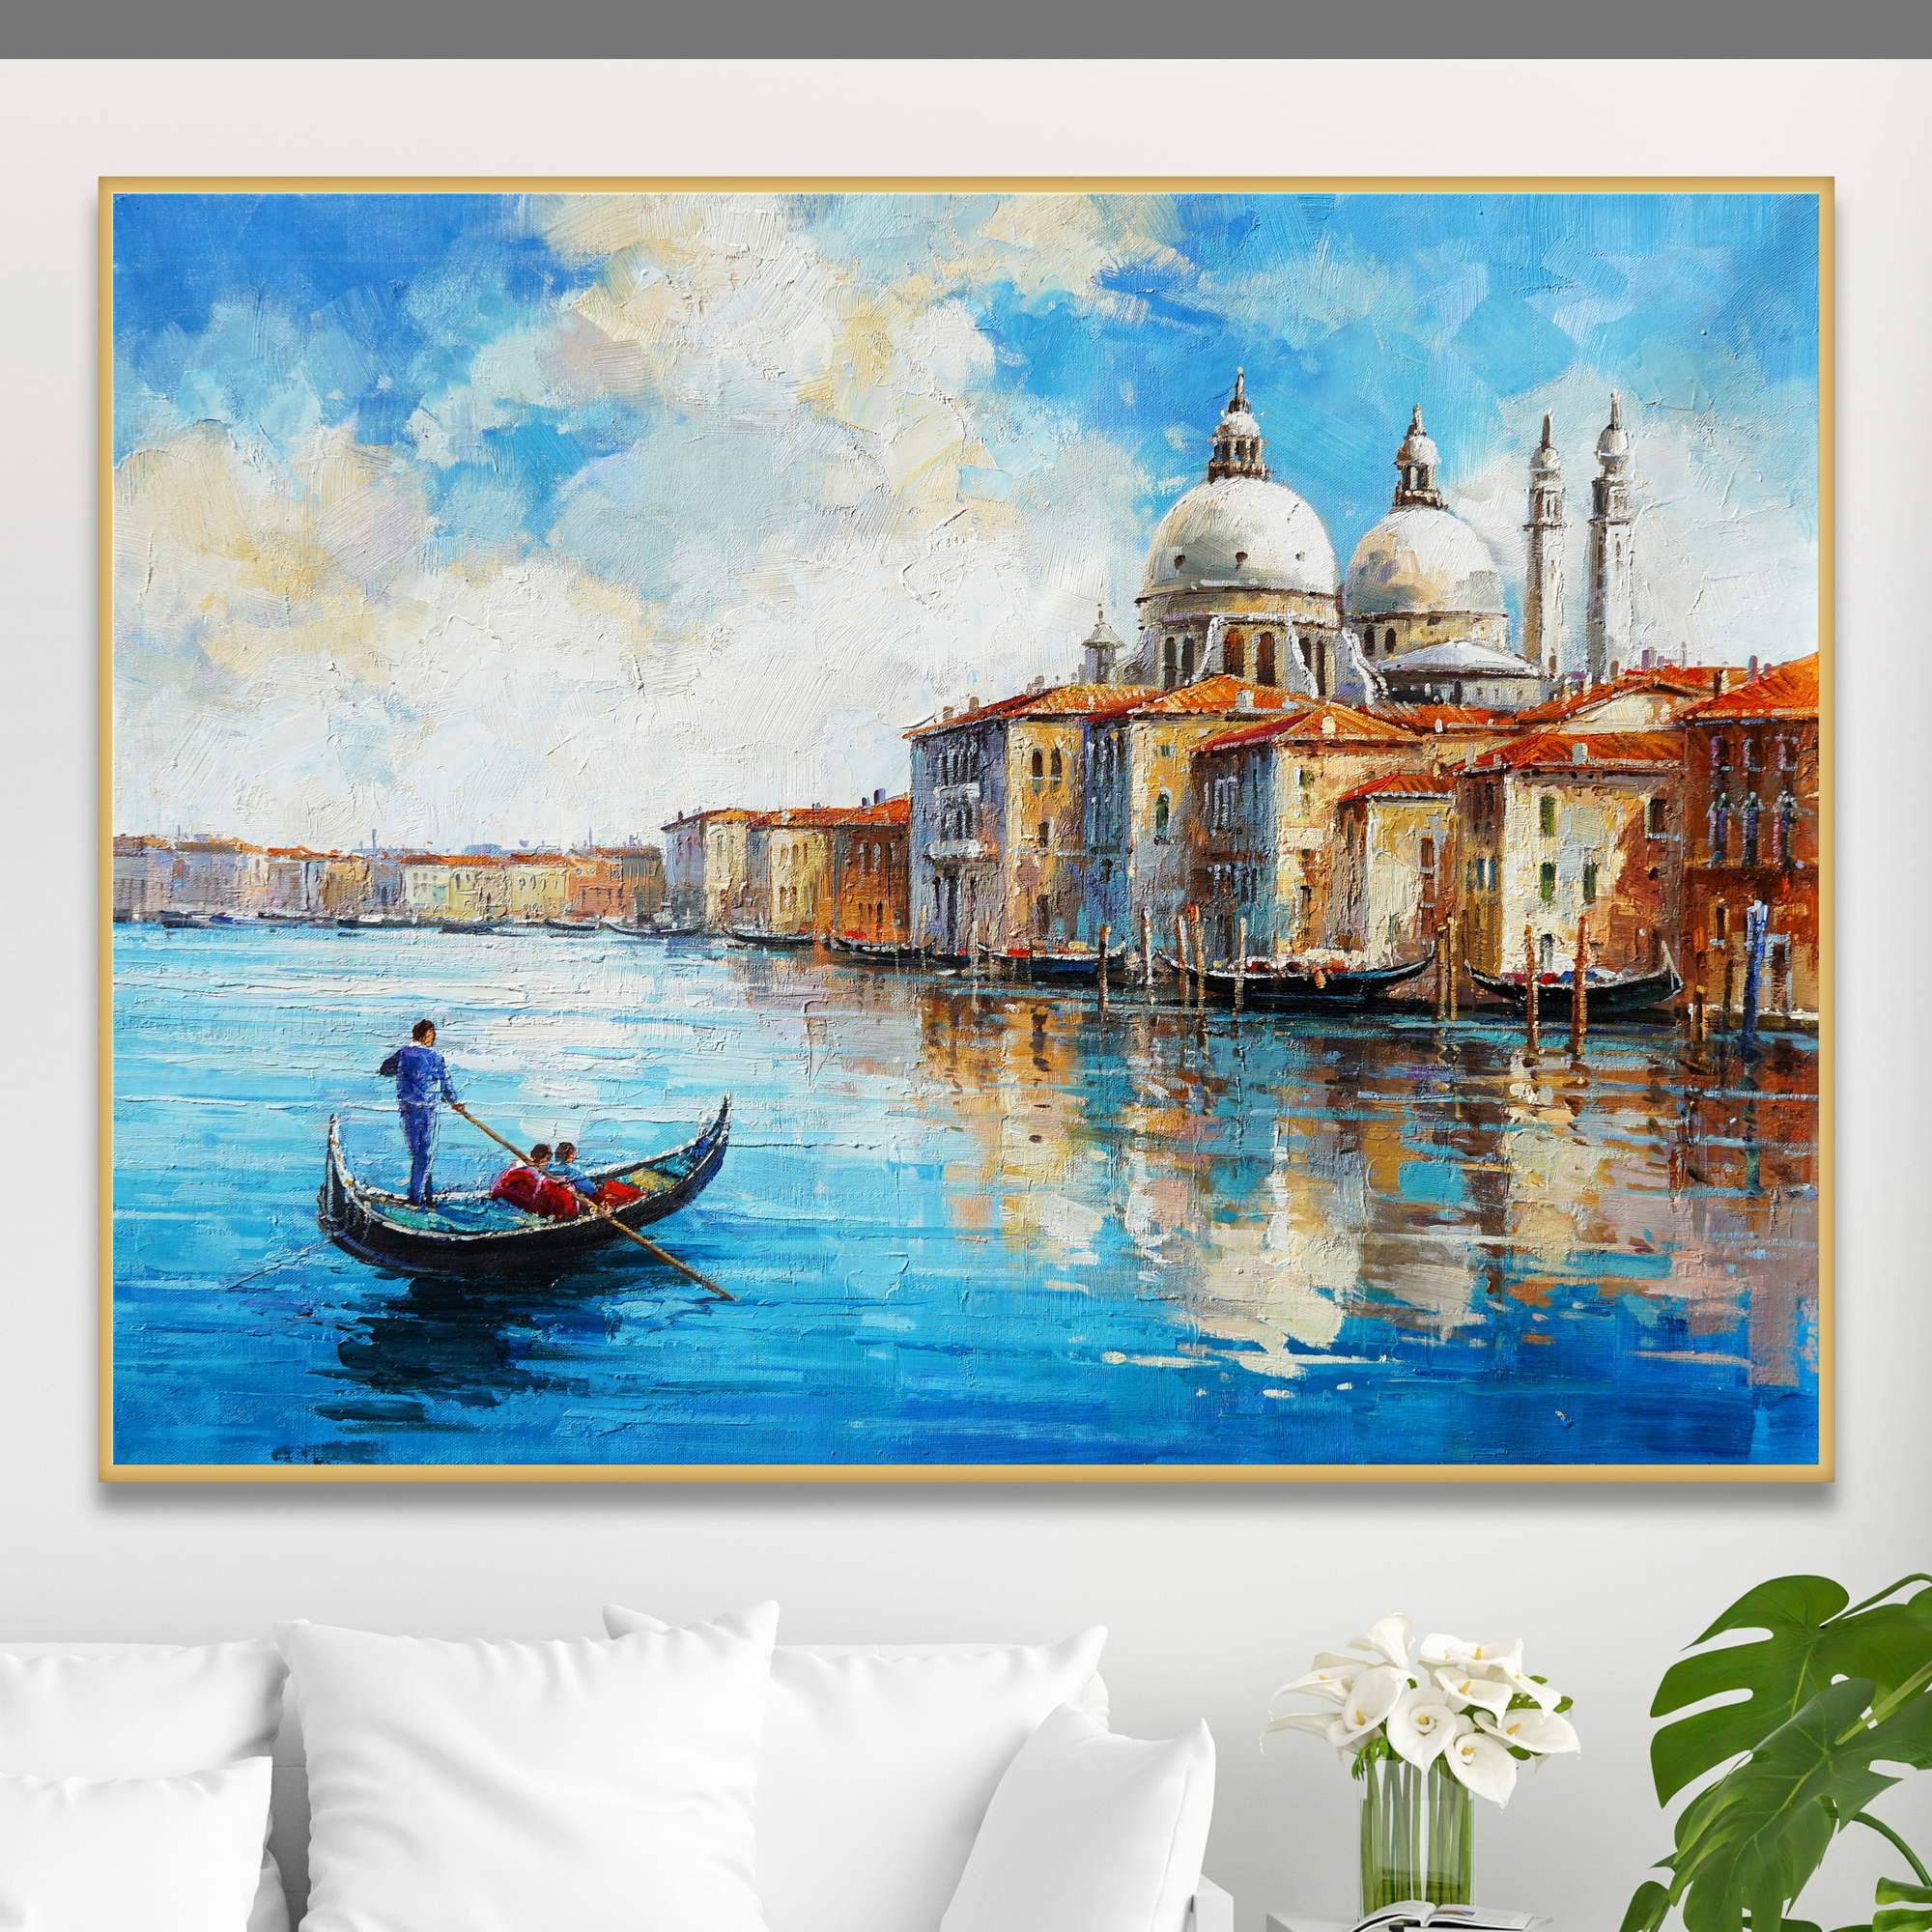 Dipinto di una gondola sul Canal Grande di Venezia con edifici storici nello sfondo